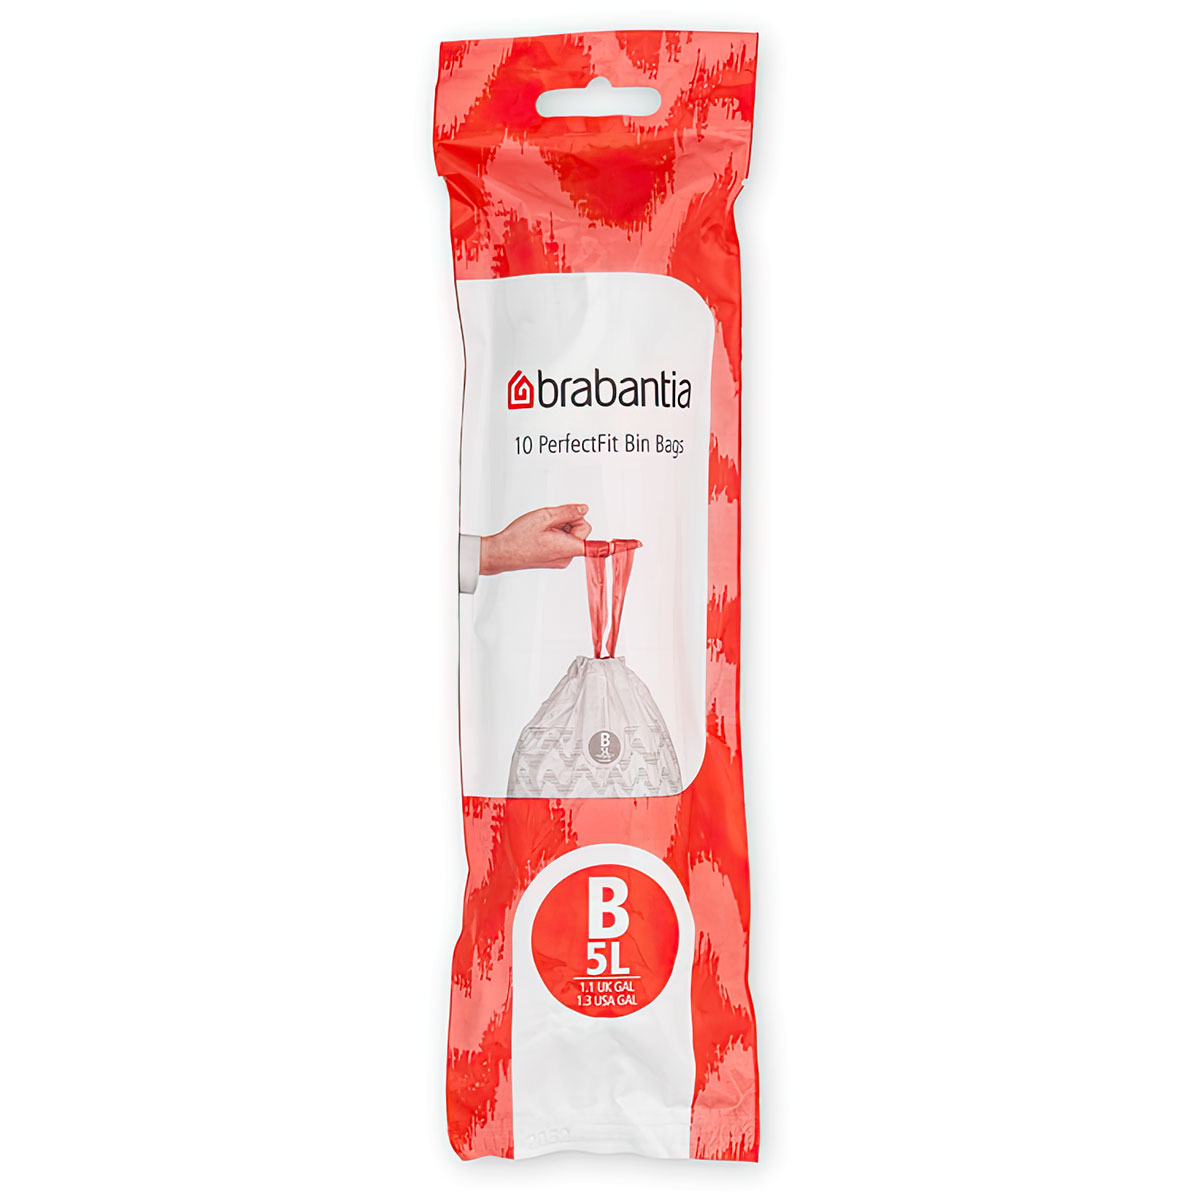 пакет пластиковый brabantia perfectfit a 3л 10шт Пакет пластиковый Brabantia PerfectFit B 5л 10шт